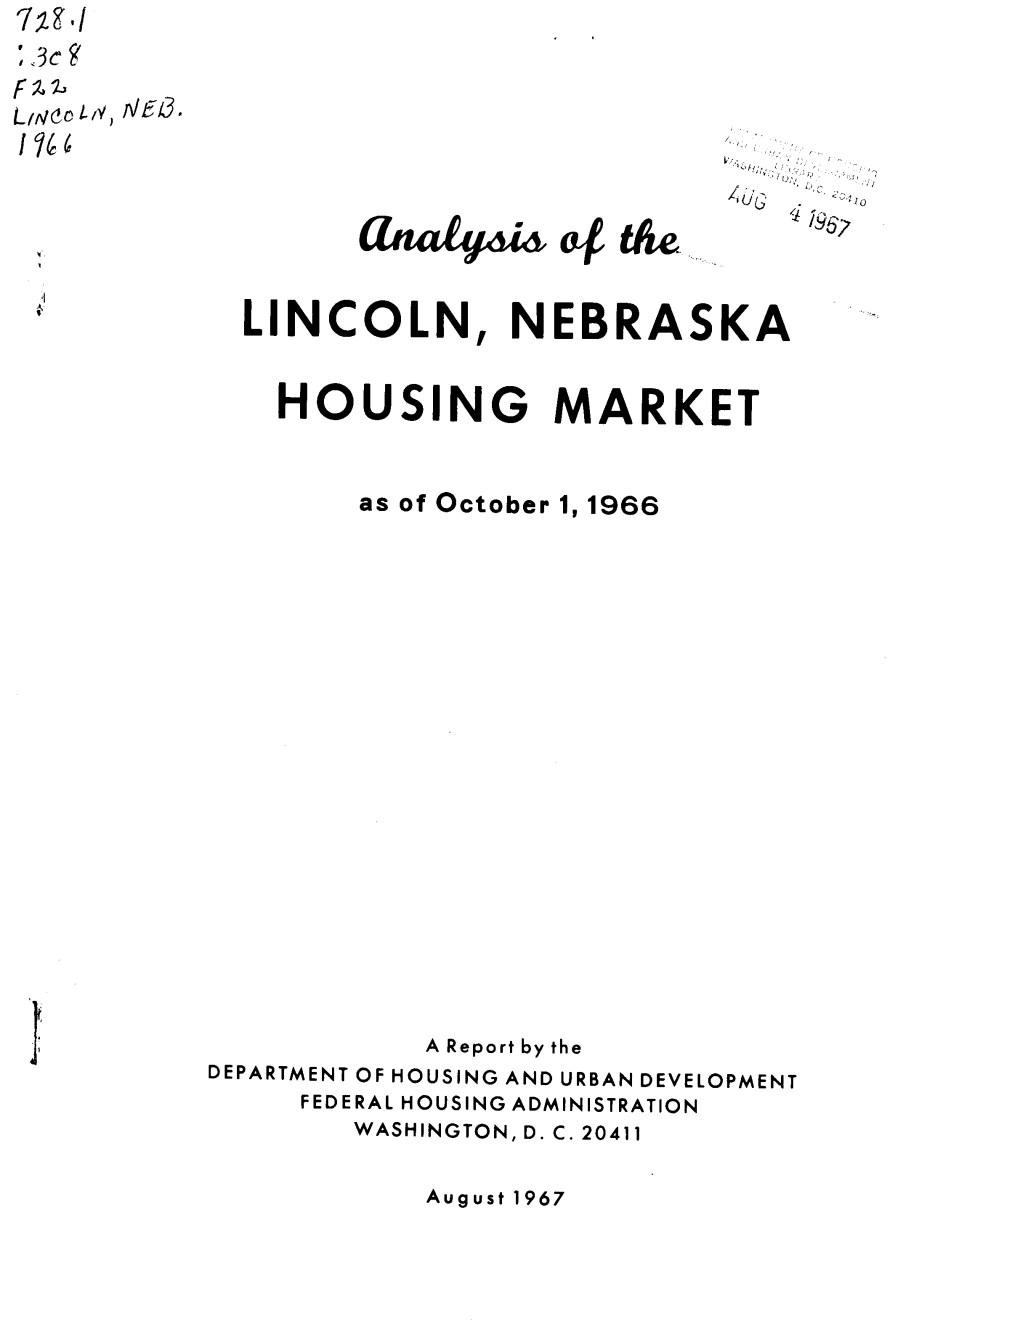 Analysis of the Lincoln, Nebraska Housing Market